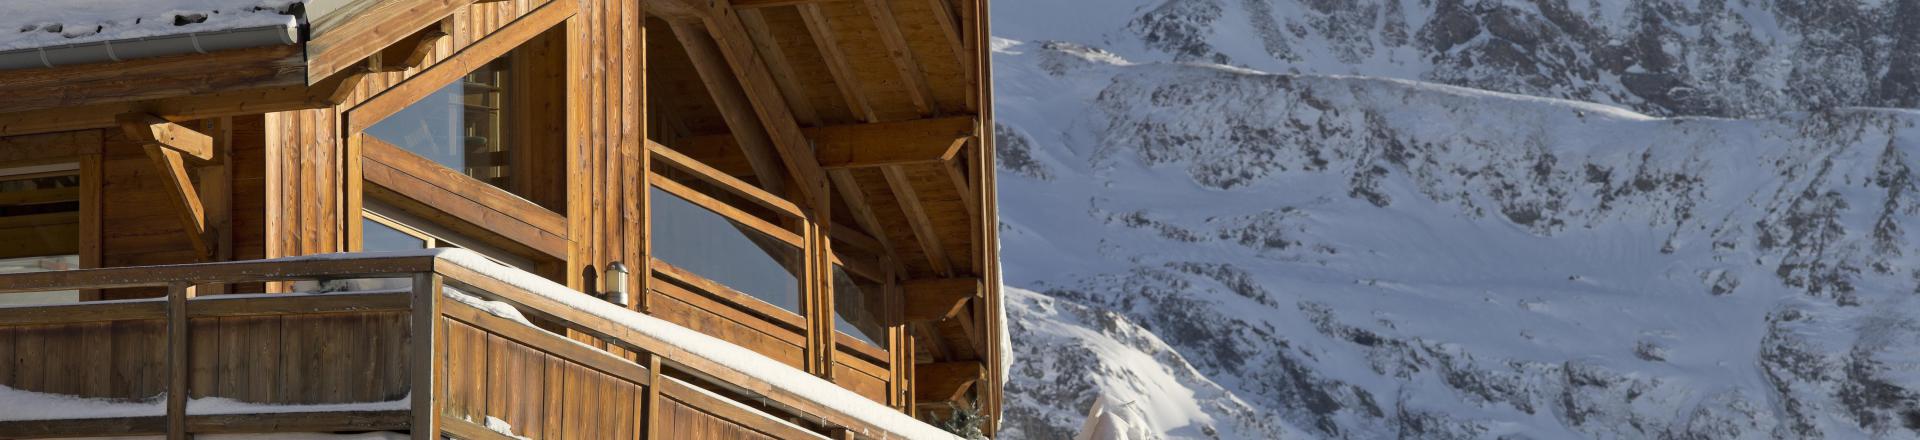 Location au ski Résidence le Cristal de l'Alpe - Alpe d'Huez - Extérieur hiver